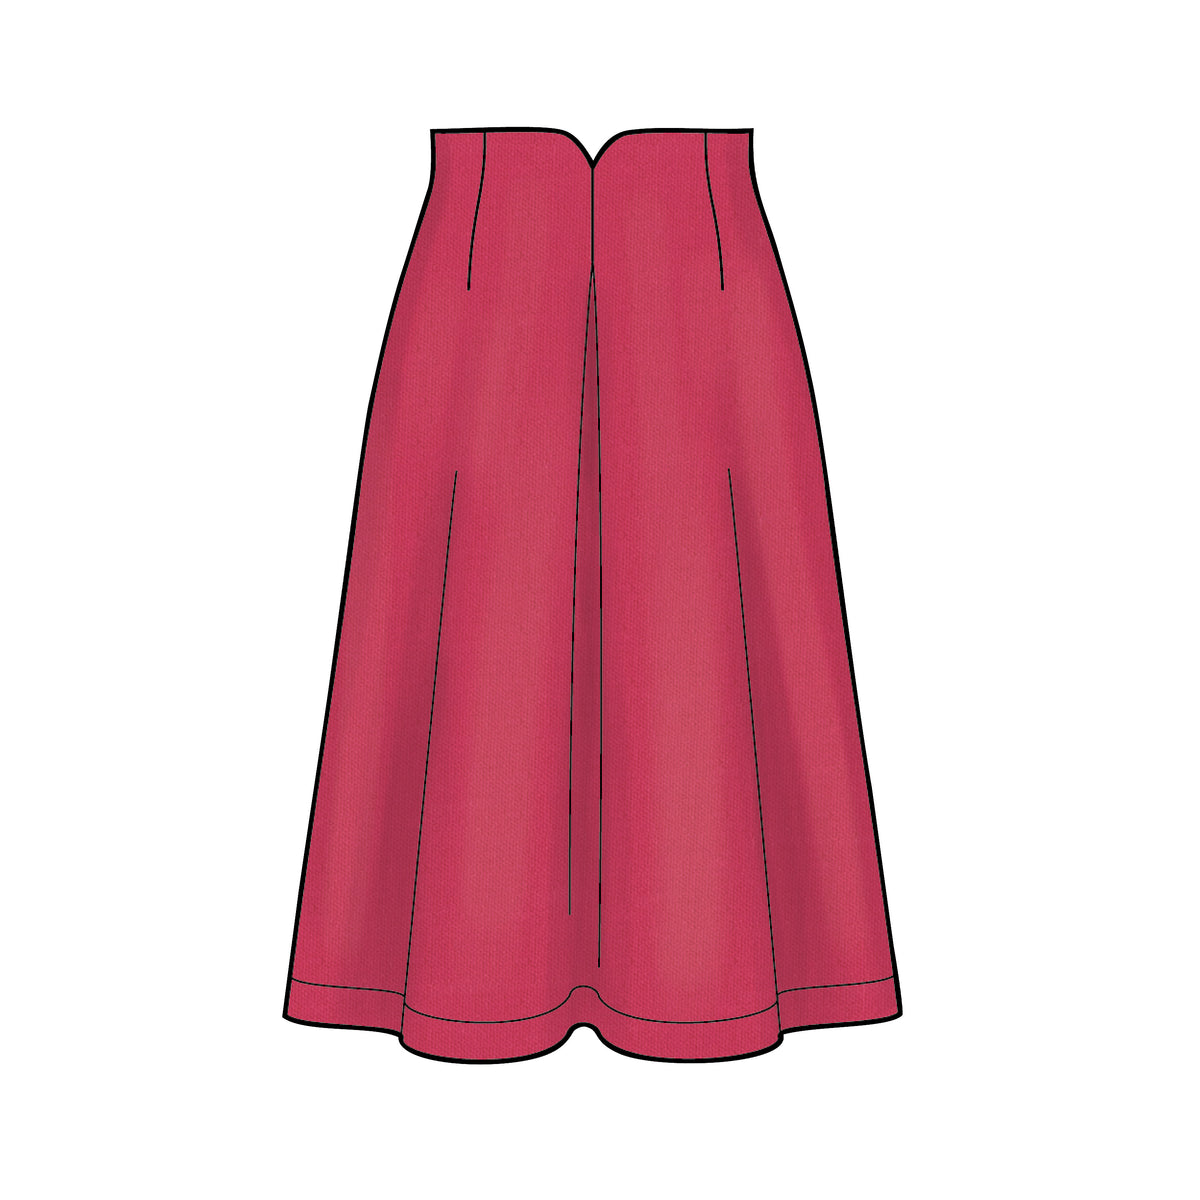 6642 New Look Sewing Pattern N6642 Misses' Raised Waist Skirts